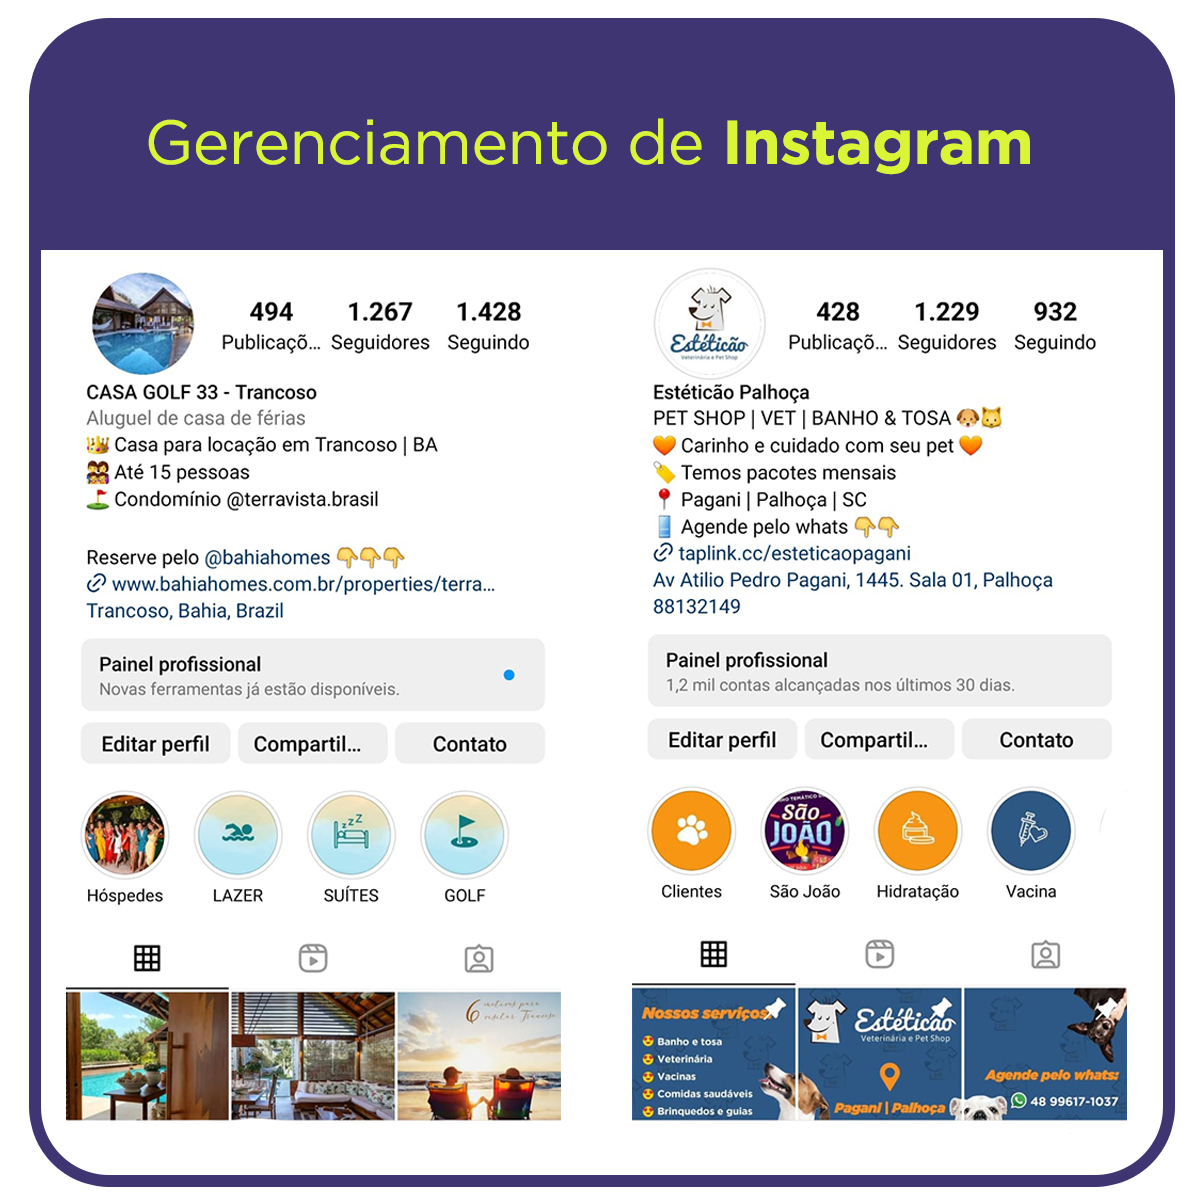 Gerenciamento de instagram